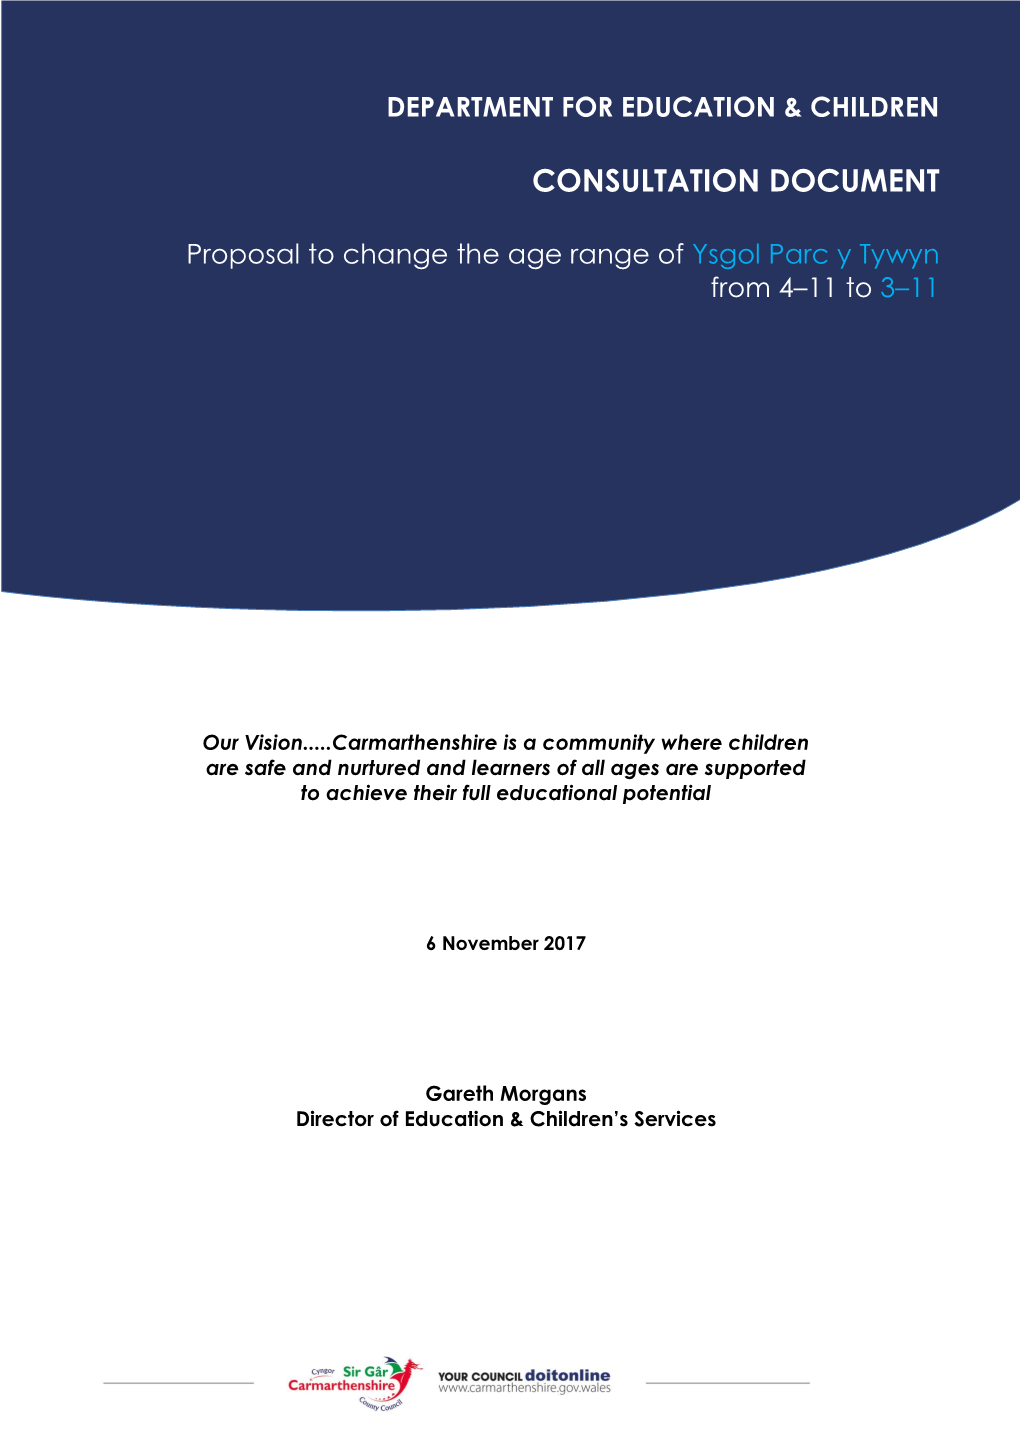 Proposal to Change the Age Range of Ysgol Parc Y Tywyn